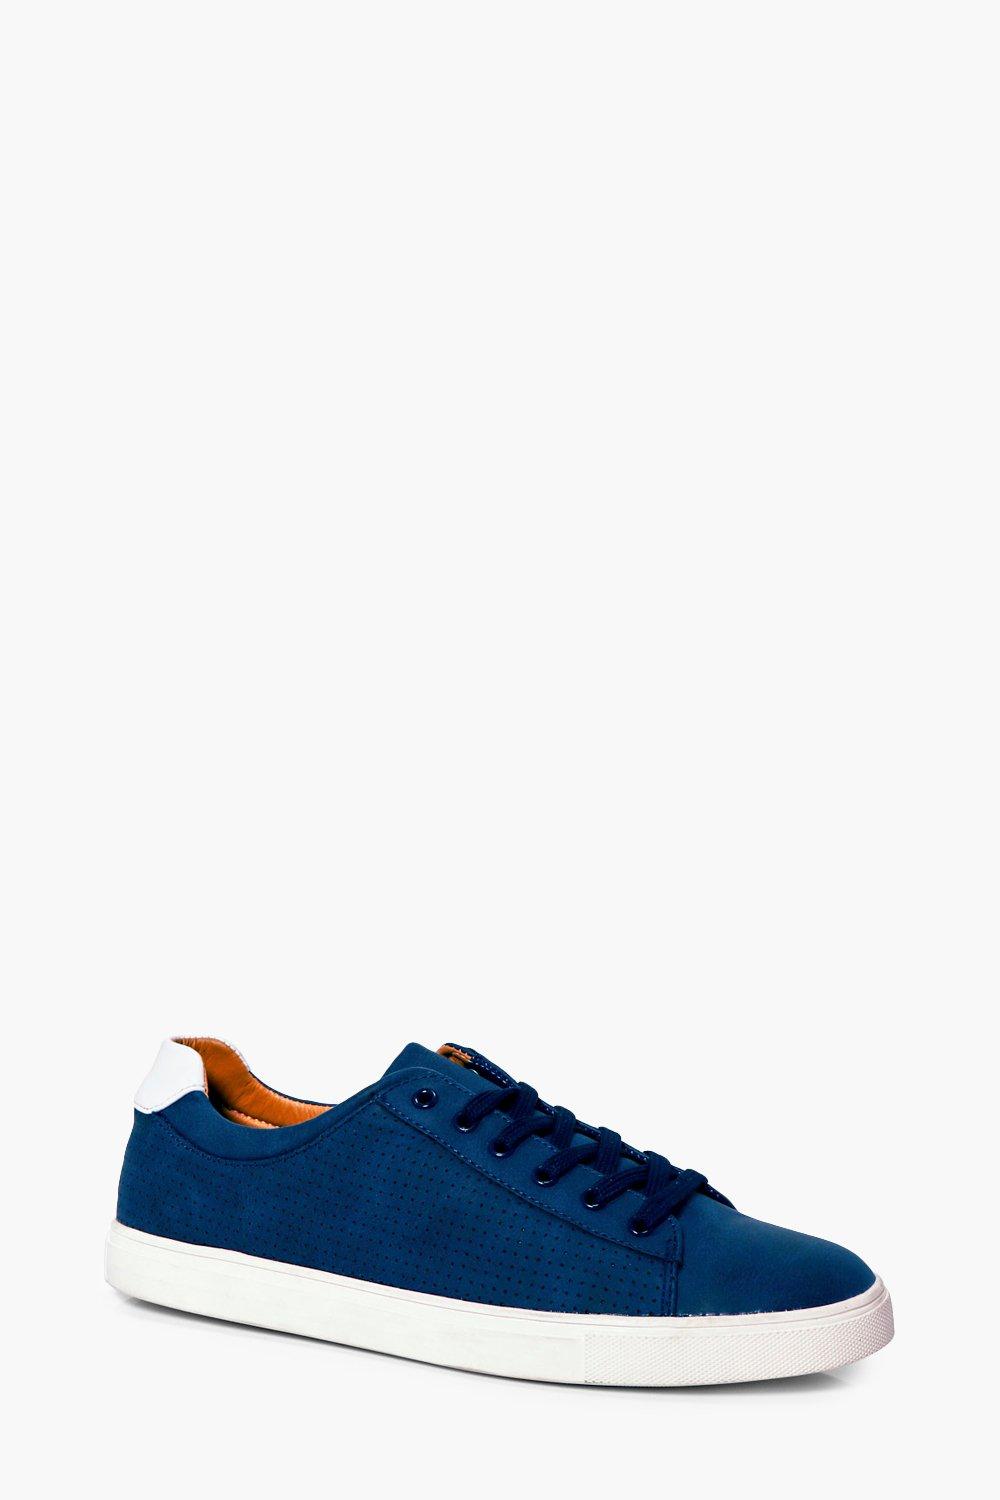 scarpe da ginnastica azzurre con lacci | boohoo